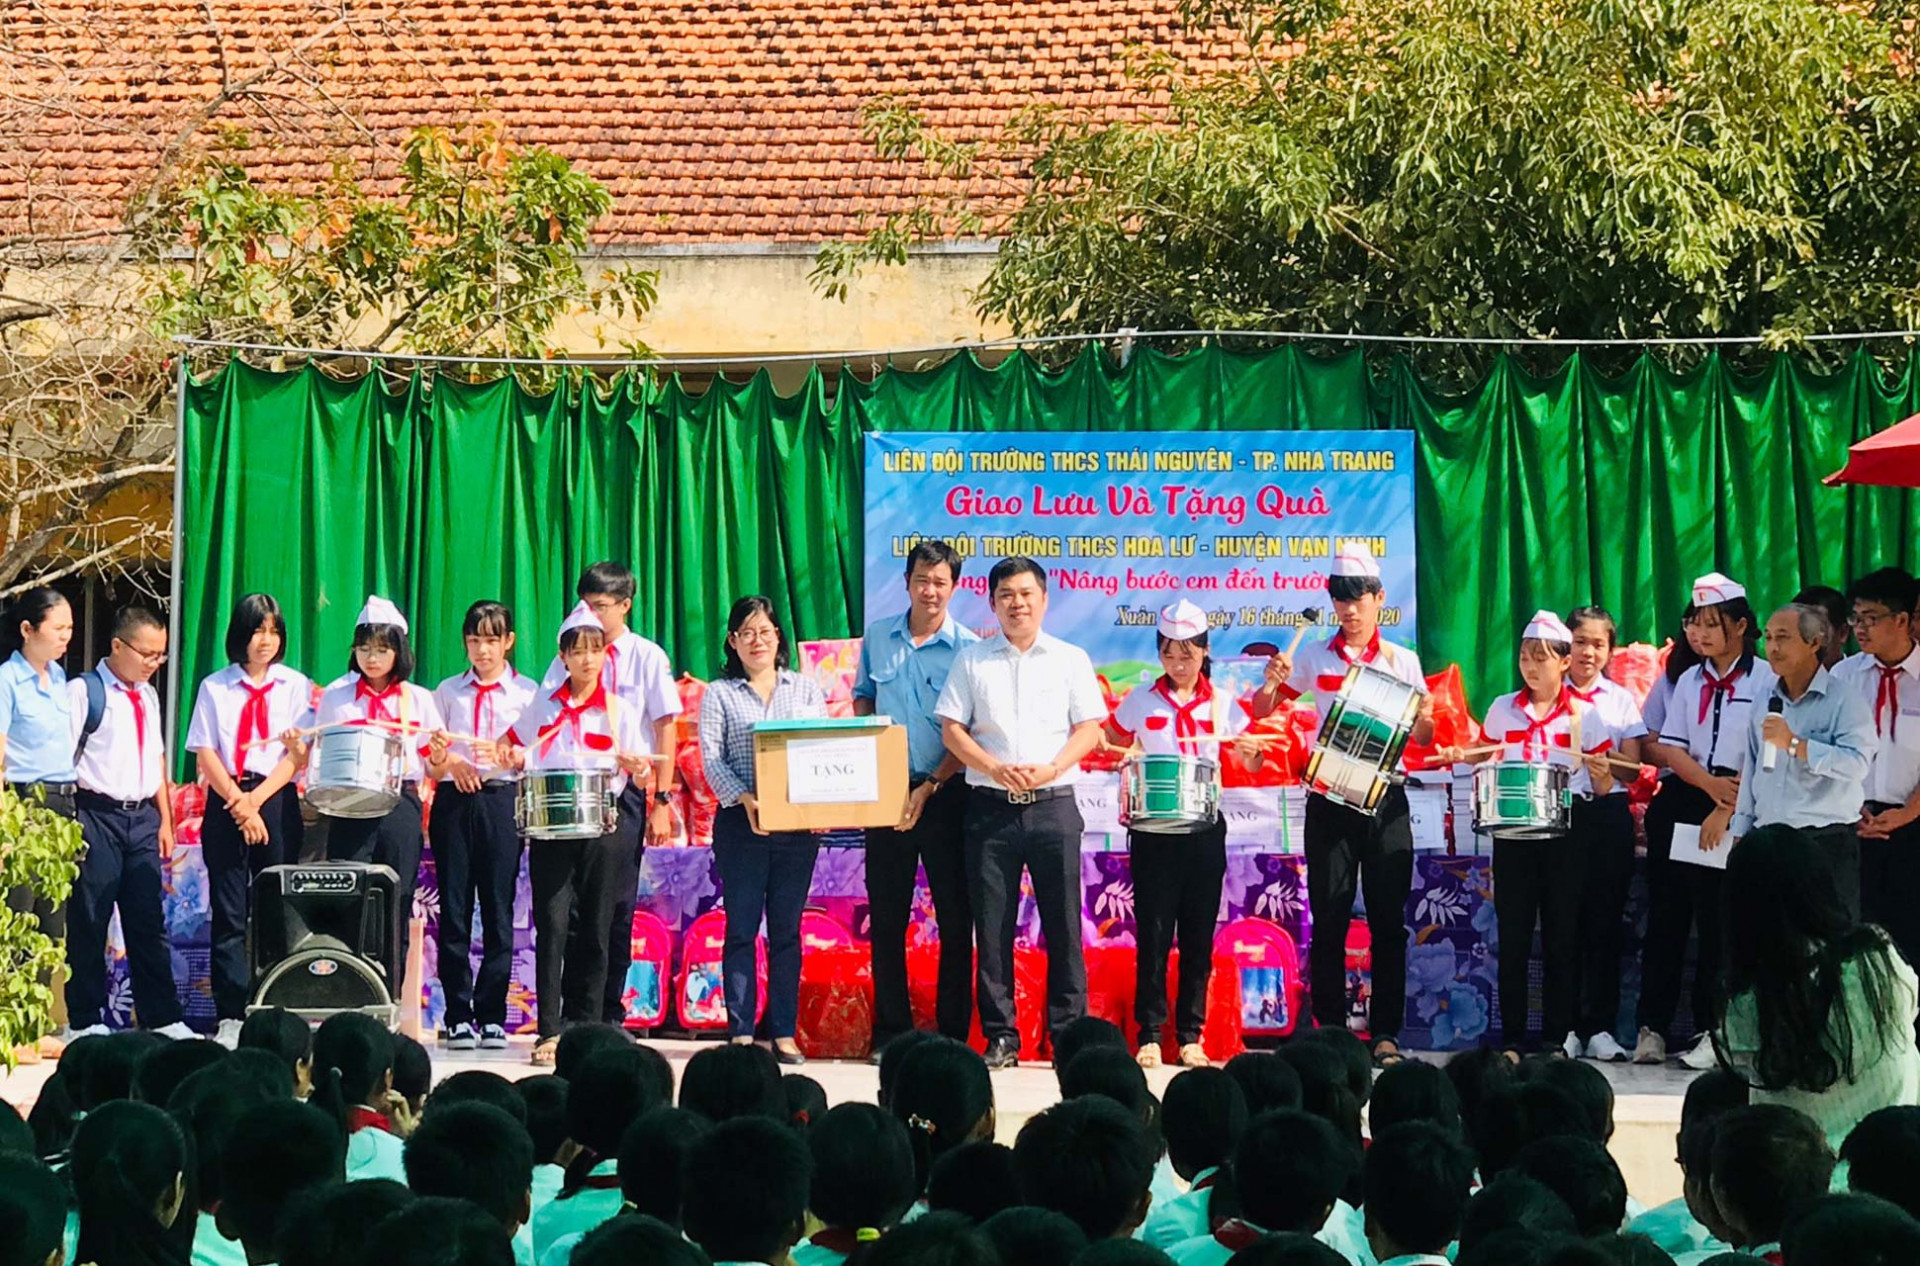 Liên đội Trường THCS Thái Nguyên trao quà cho Liên đội Trường THCS Hoa Lư